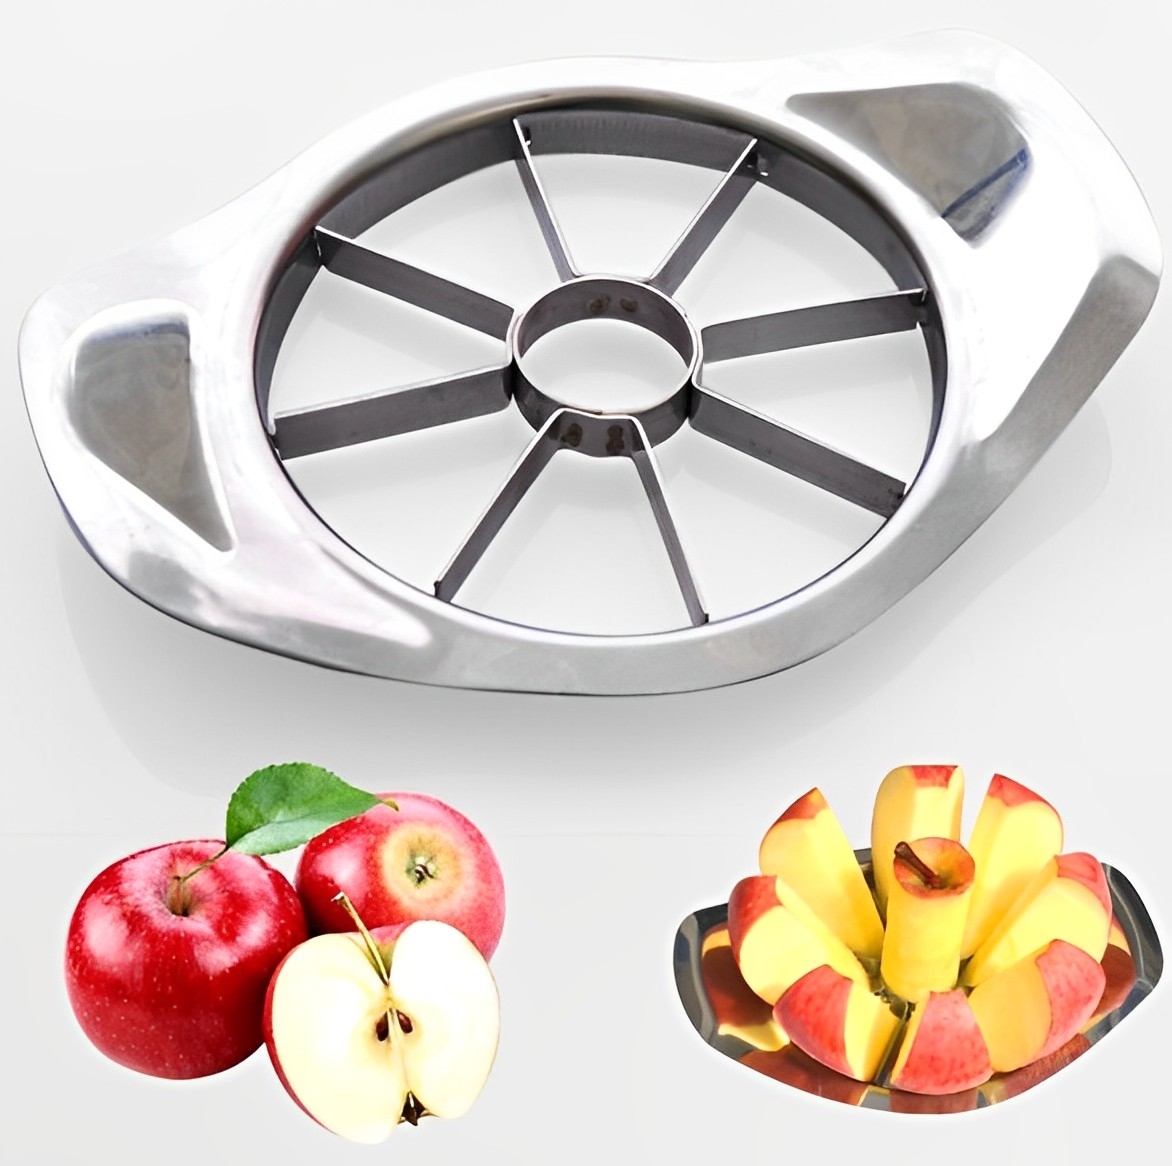 2 x Stainless Steel Fruit Slicer Apple Corer